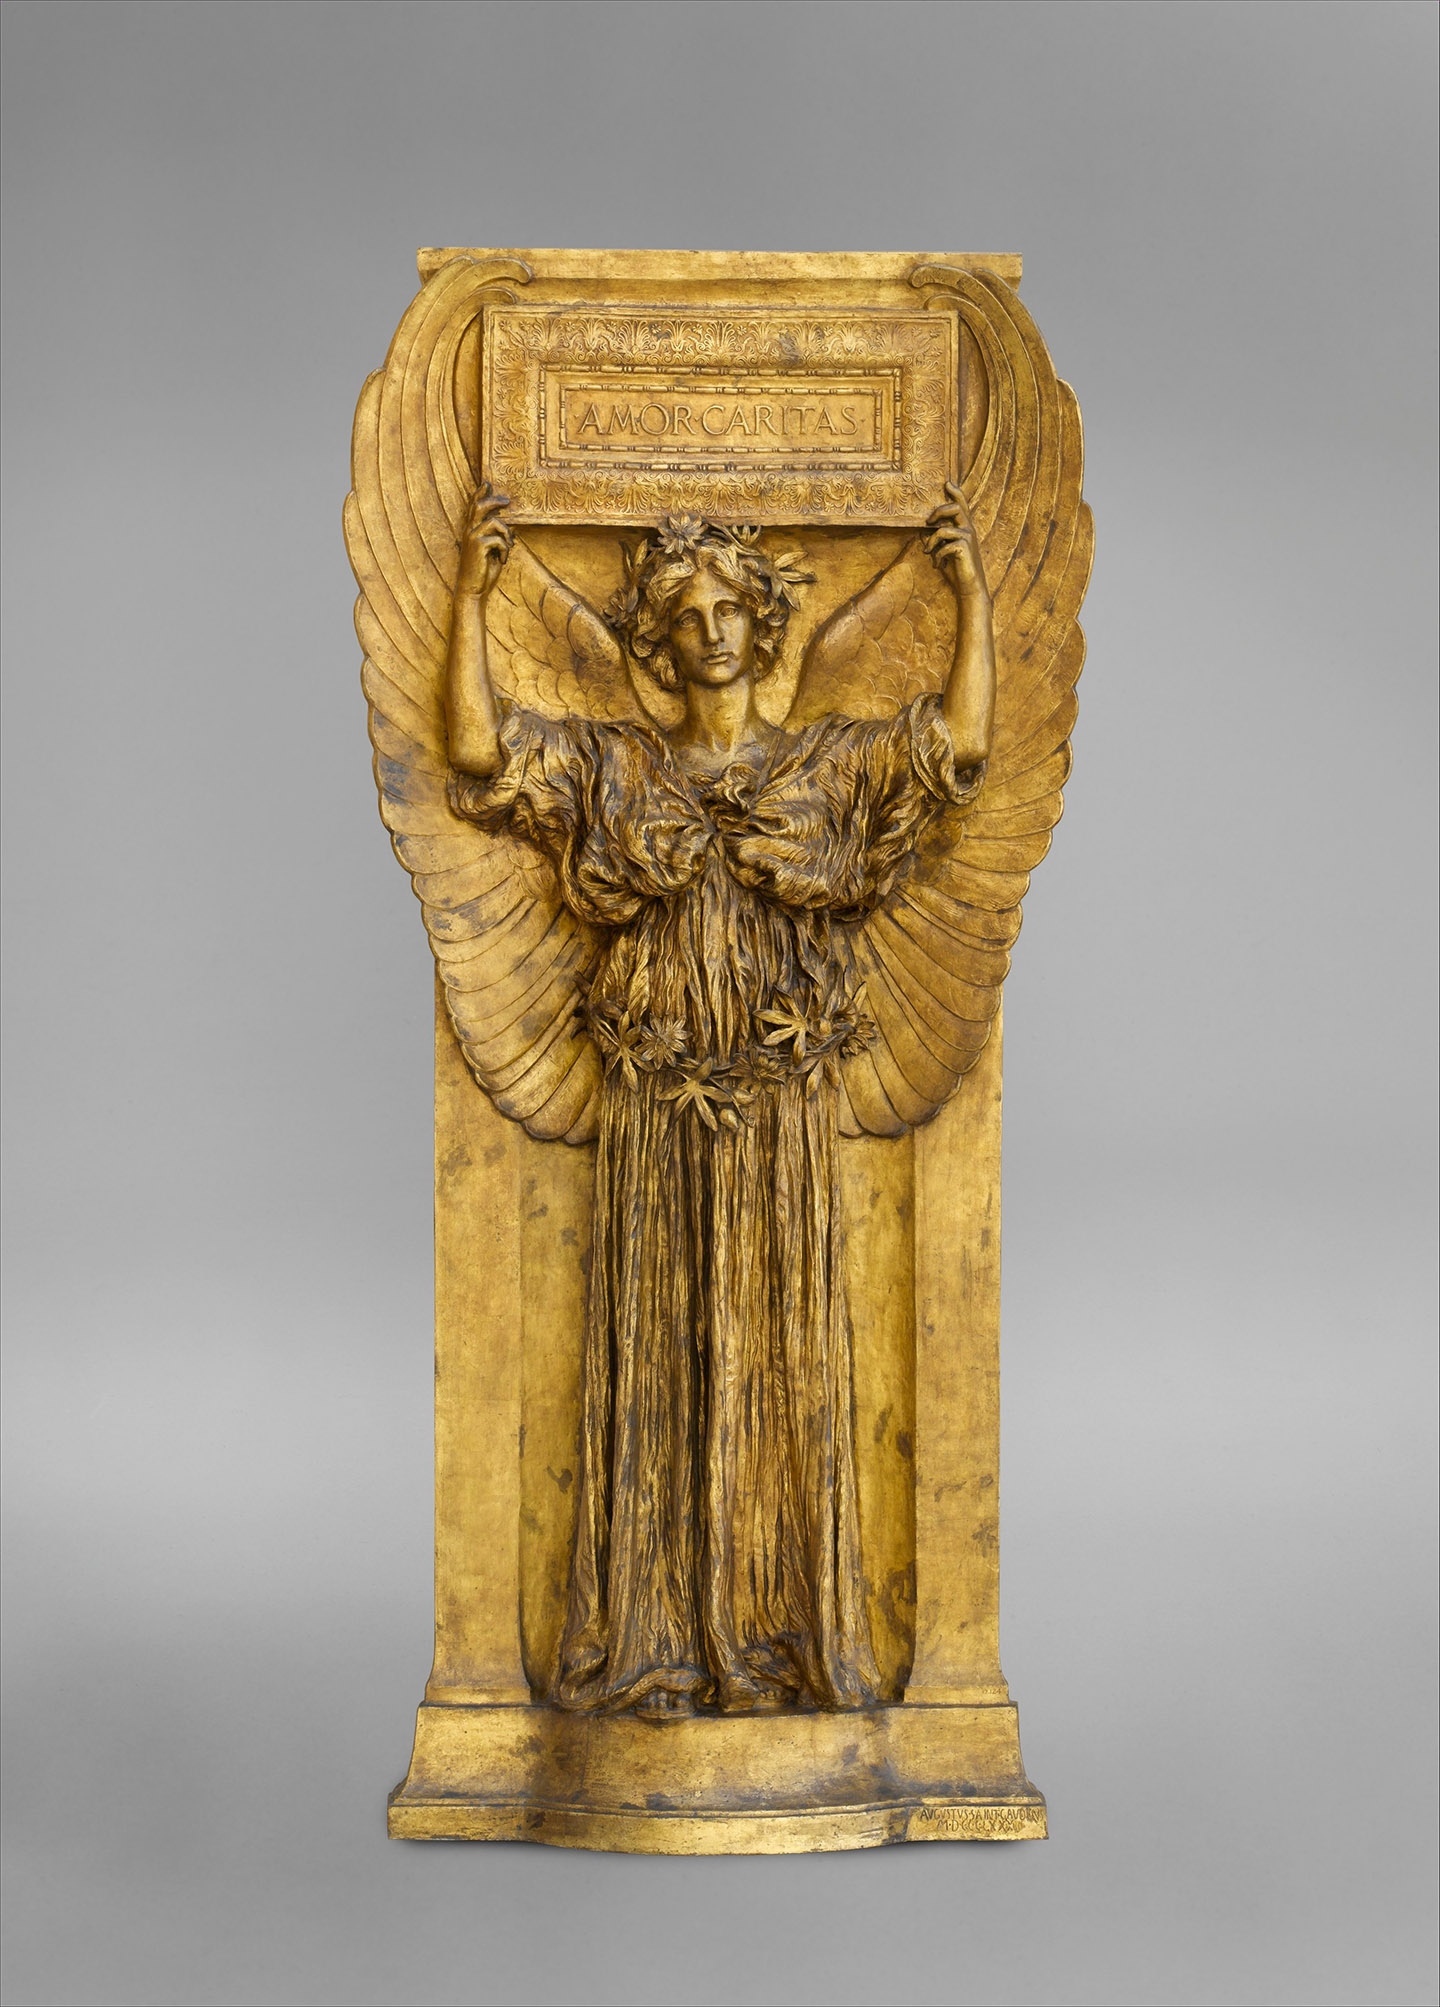 Bức tượng “Amor Caritas” (Tình Yêu và Bác Ái), năm 1880-1898, đúc năm 1918, của điêu khắc gia Augustus Saint-Gaudens. Đồng mạ vàng. Bảo tàng Nghệ thuật Metropolitan, Thành phố New York. (Ảnh: Tư liệu công cộng)